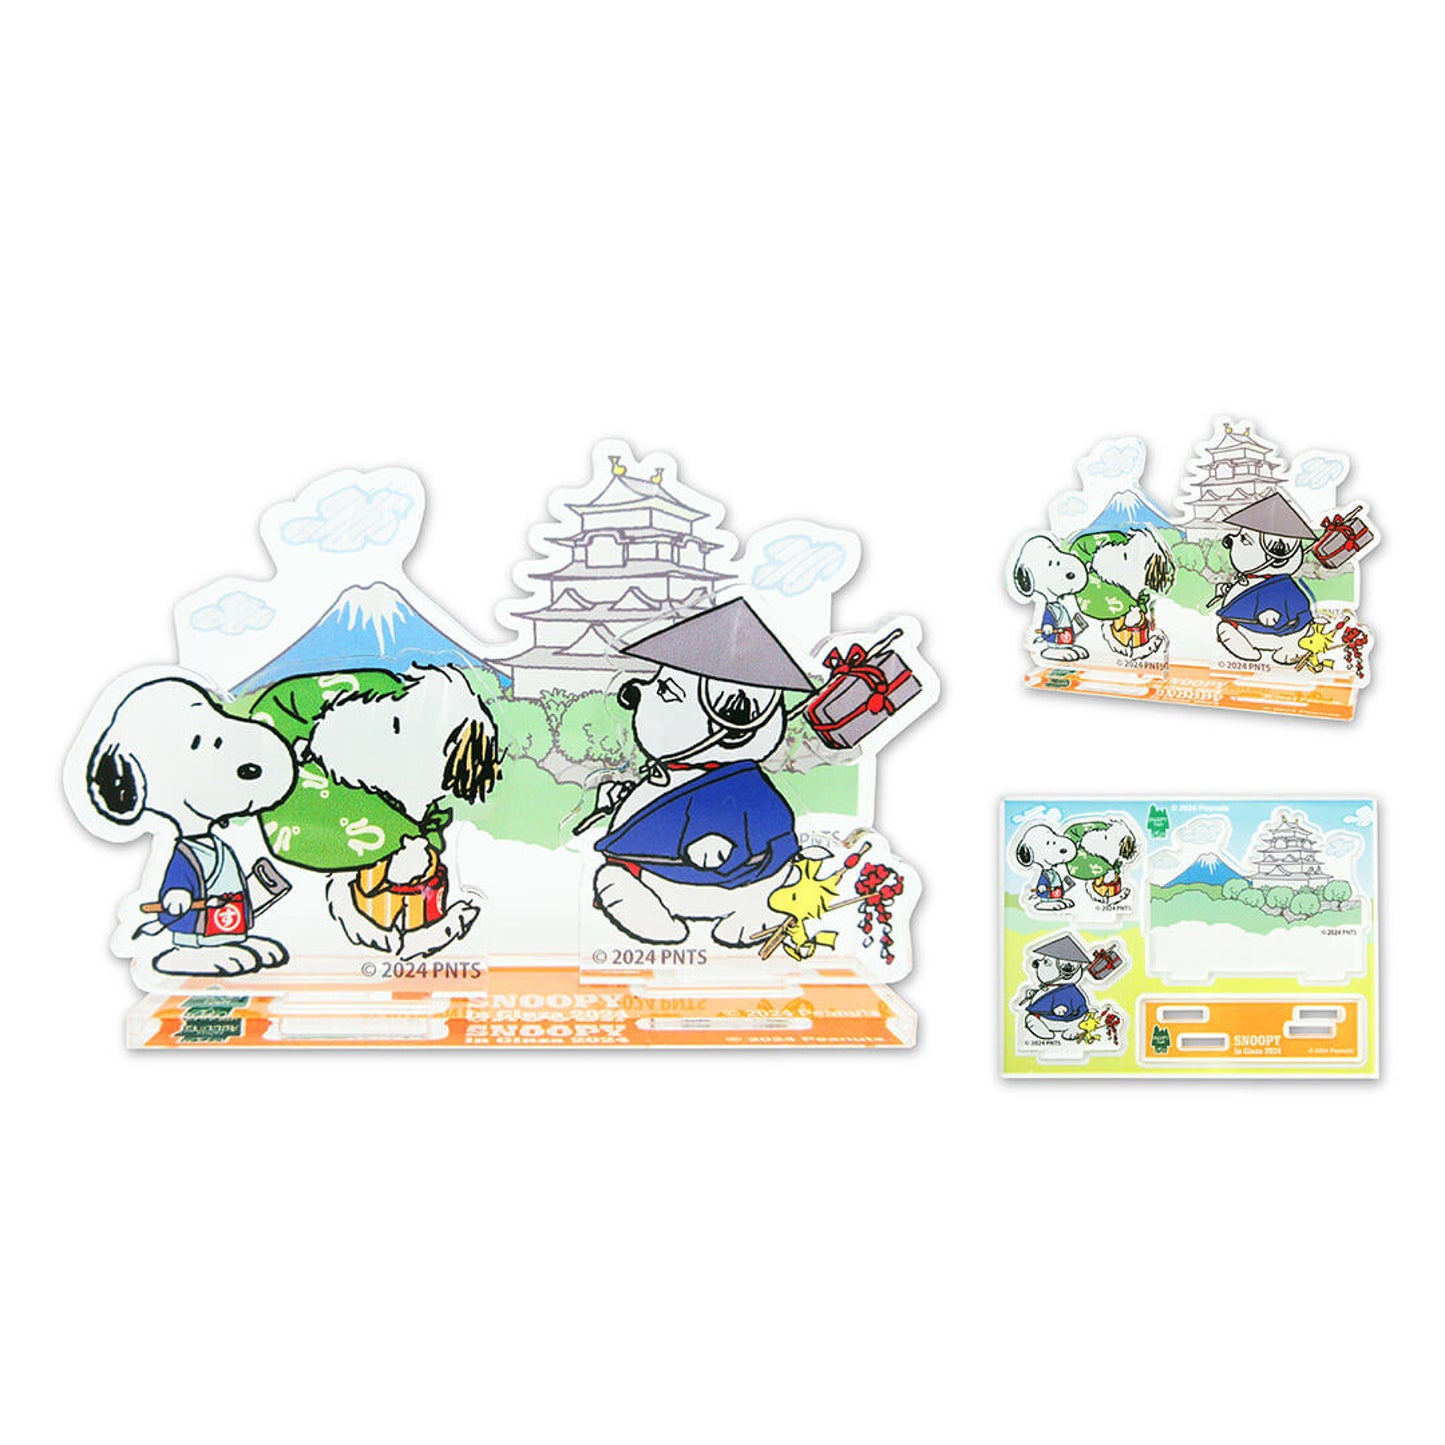 【預訂】Snoopy in Ginza 銀座展 和風番頭系列 - 文具